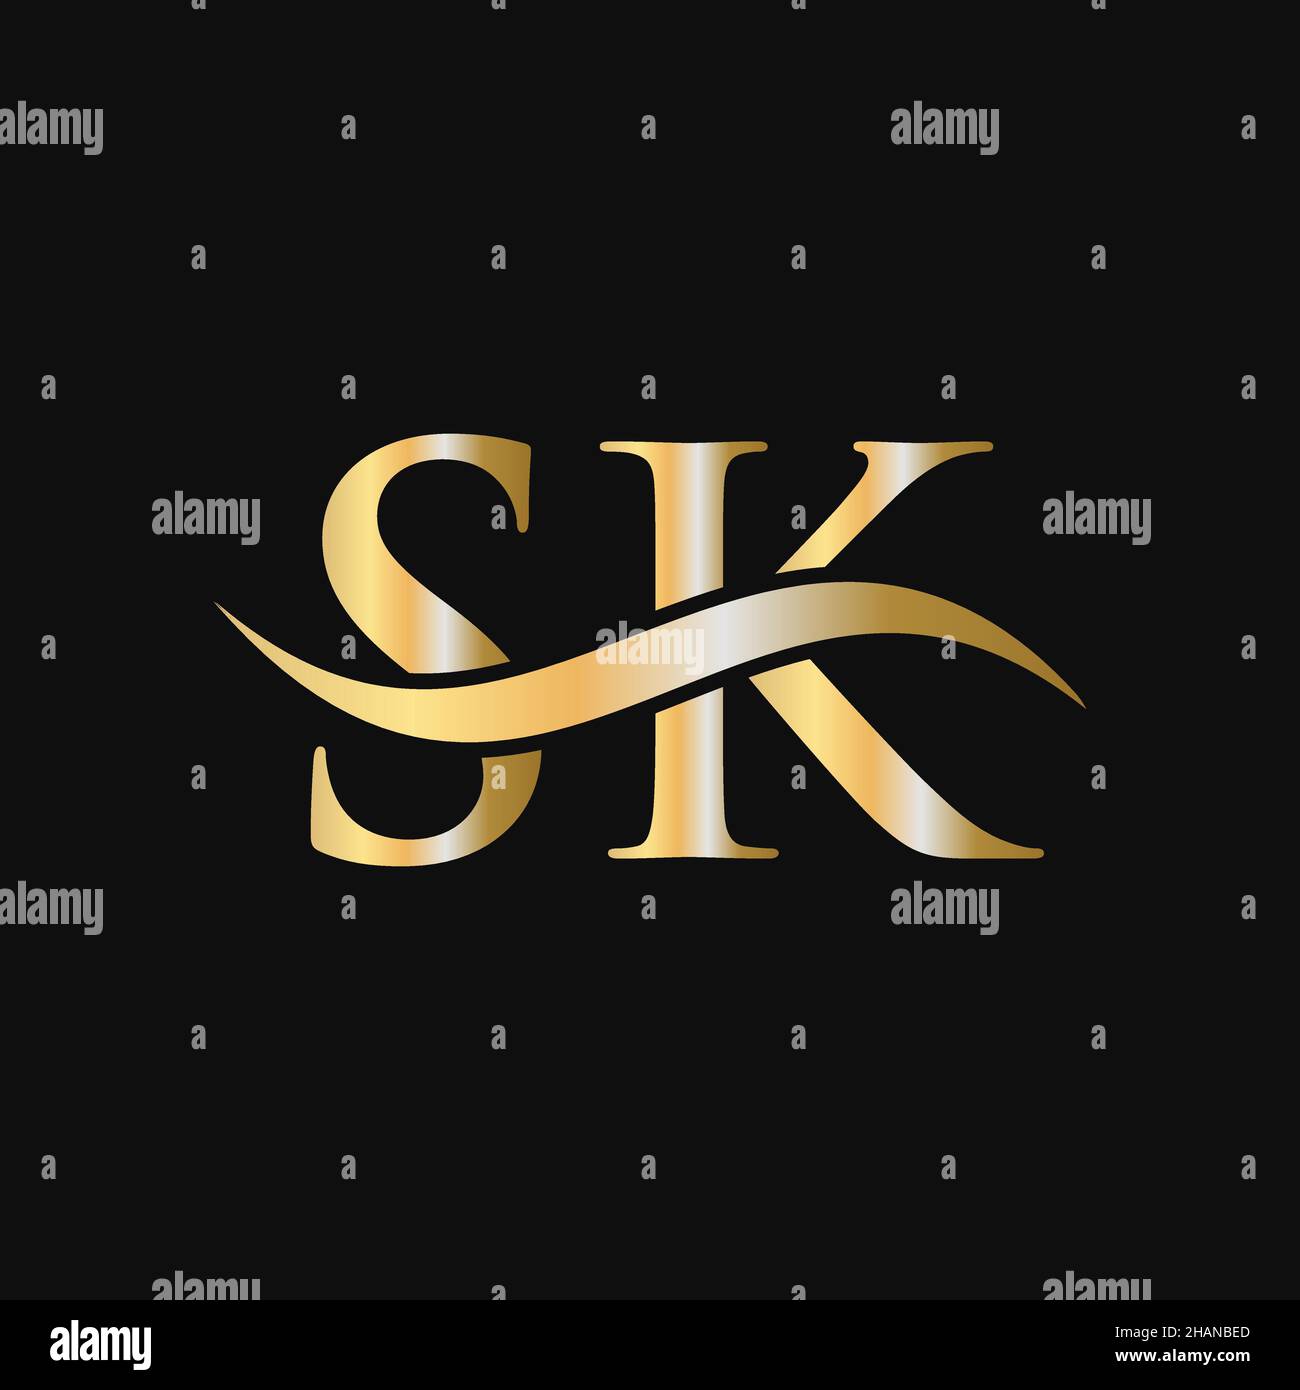 Design-Vorlage für das SK-Logo. SK, S K Buchstabe Logo Modern, flach, minimalistisch, Geschäft, Firmenzeichen Stock Vektor